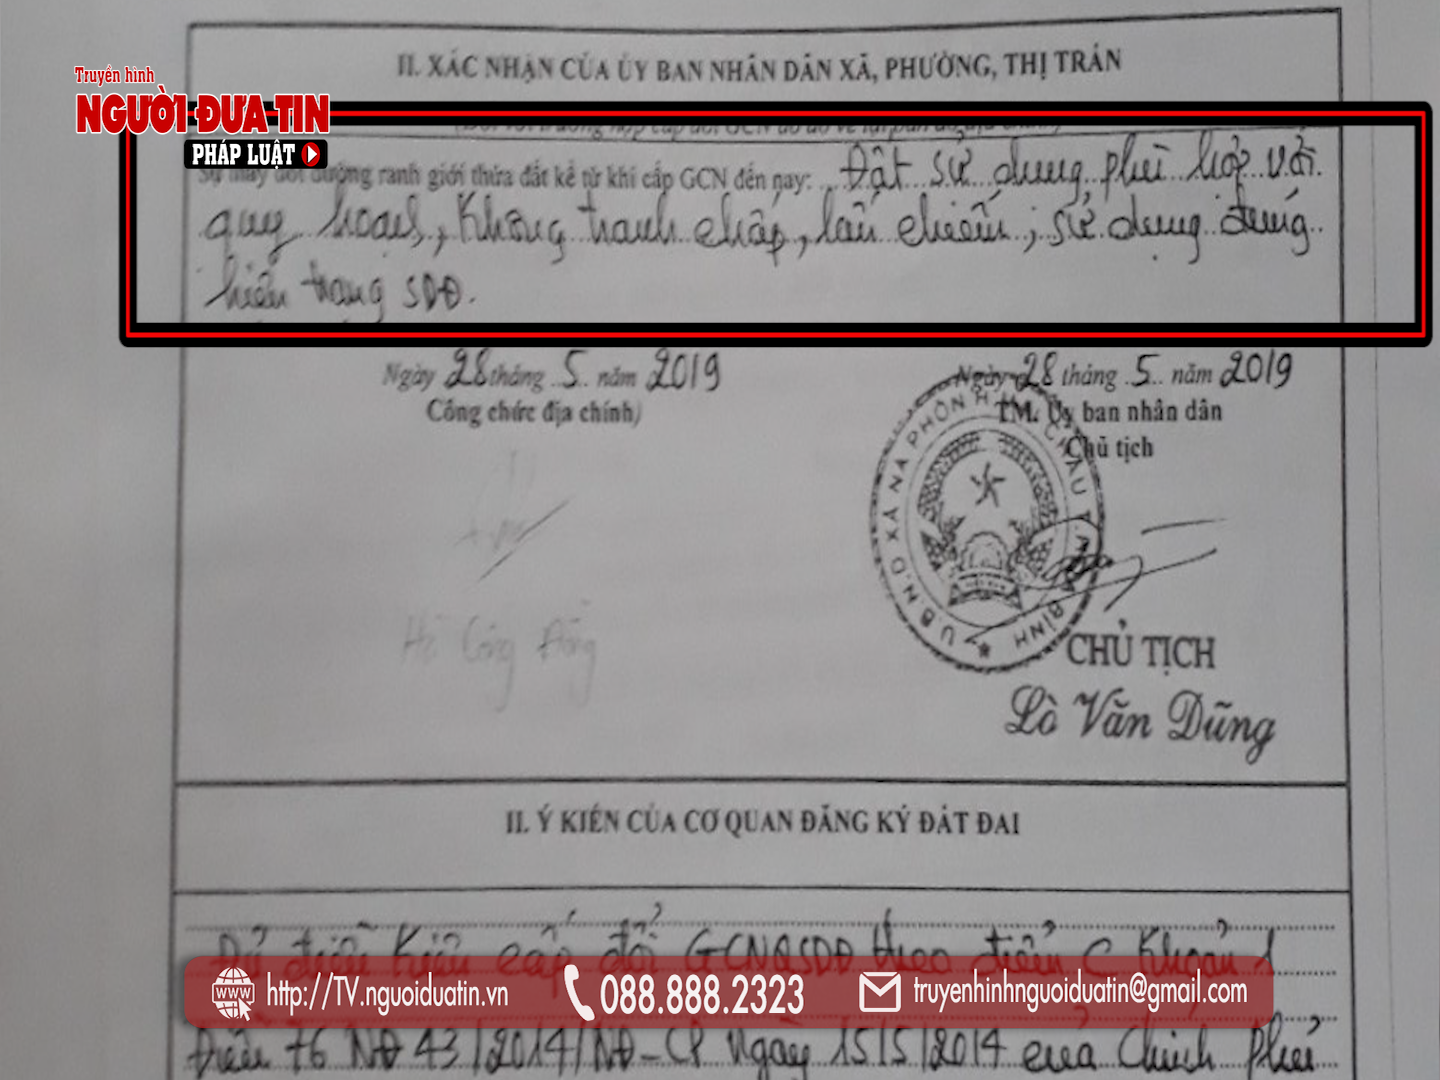 Ngày 28 và ngày 30/5/2019, UBND xã Nà Phòn và Chi nhánh Văn phòng đăng ký đất đai huyện Mai Châu chứng nhận mảnh đất nhà ông Nam sử dụng đúng các quy định của pháp luật